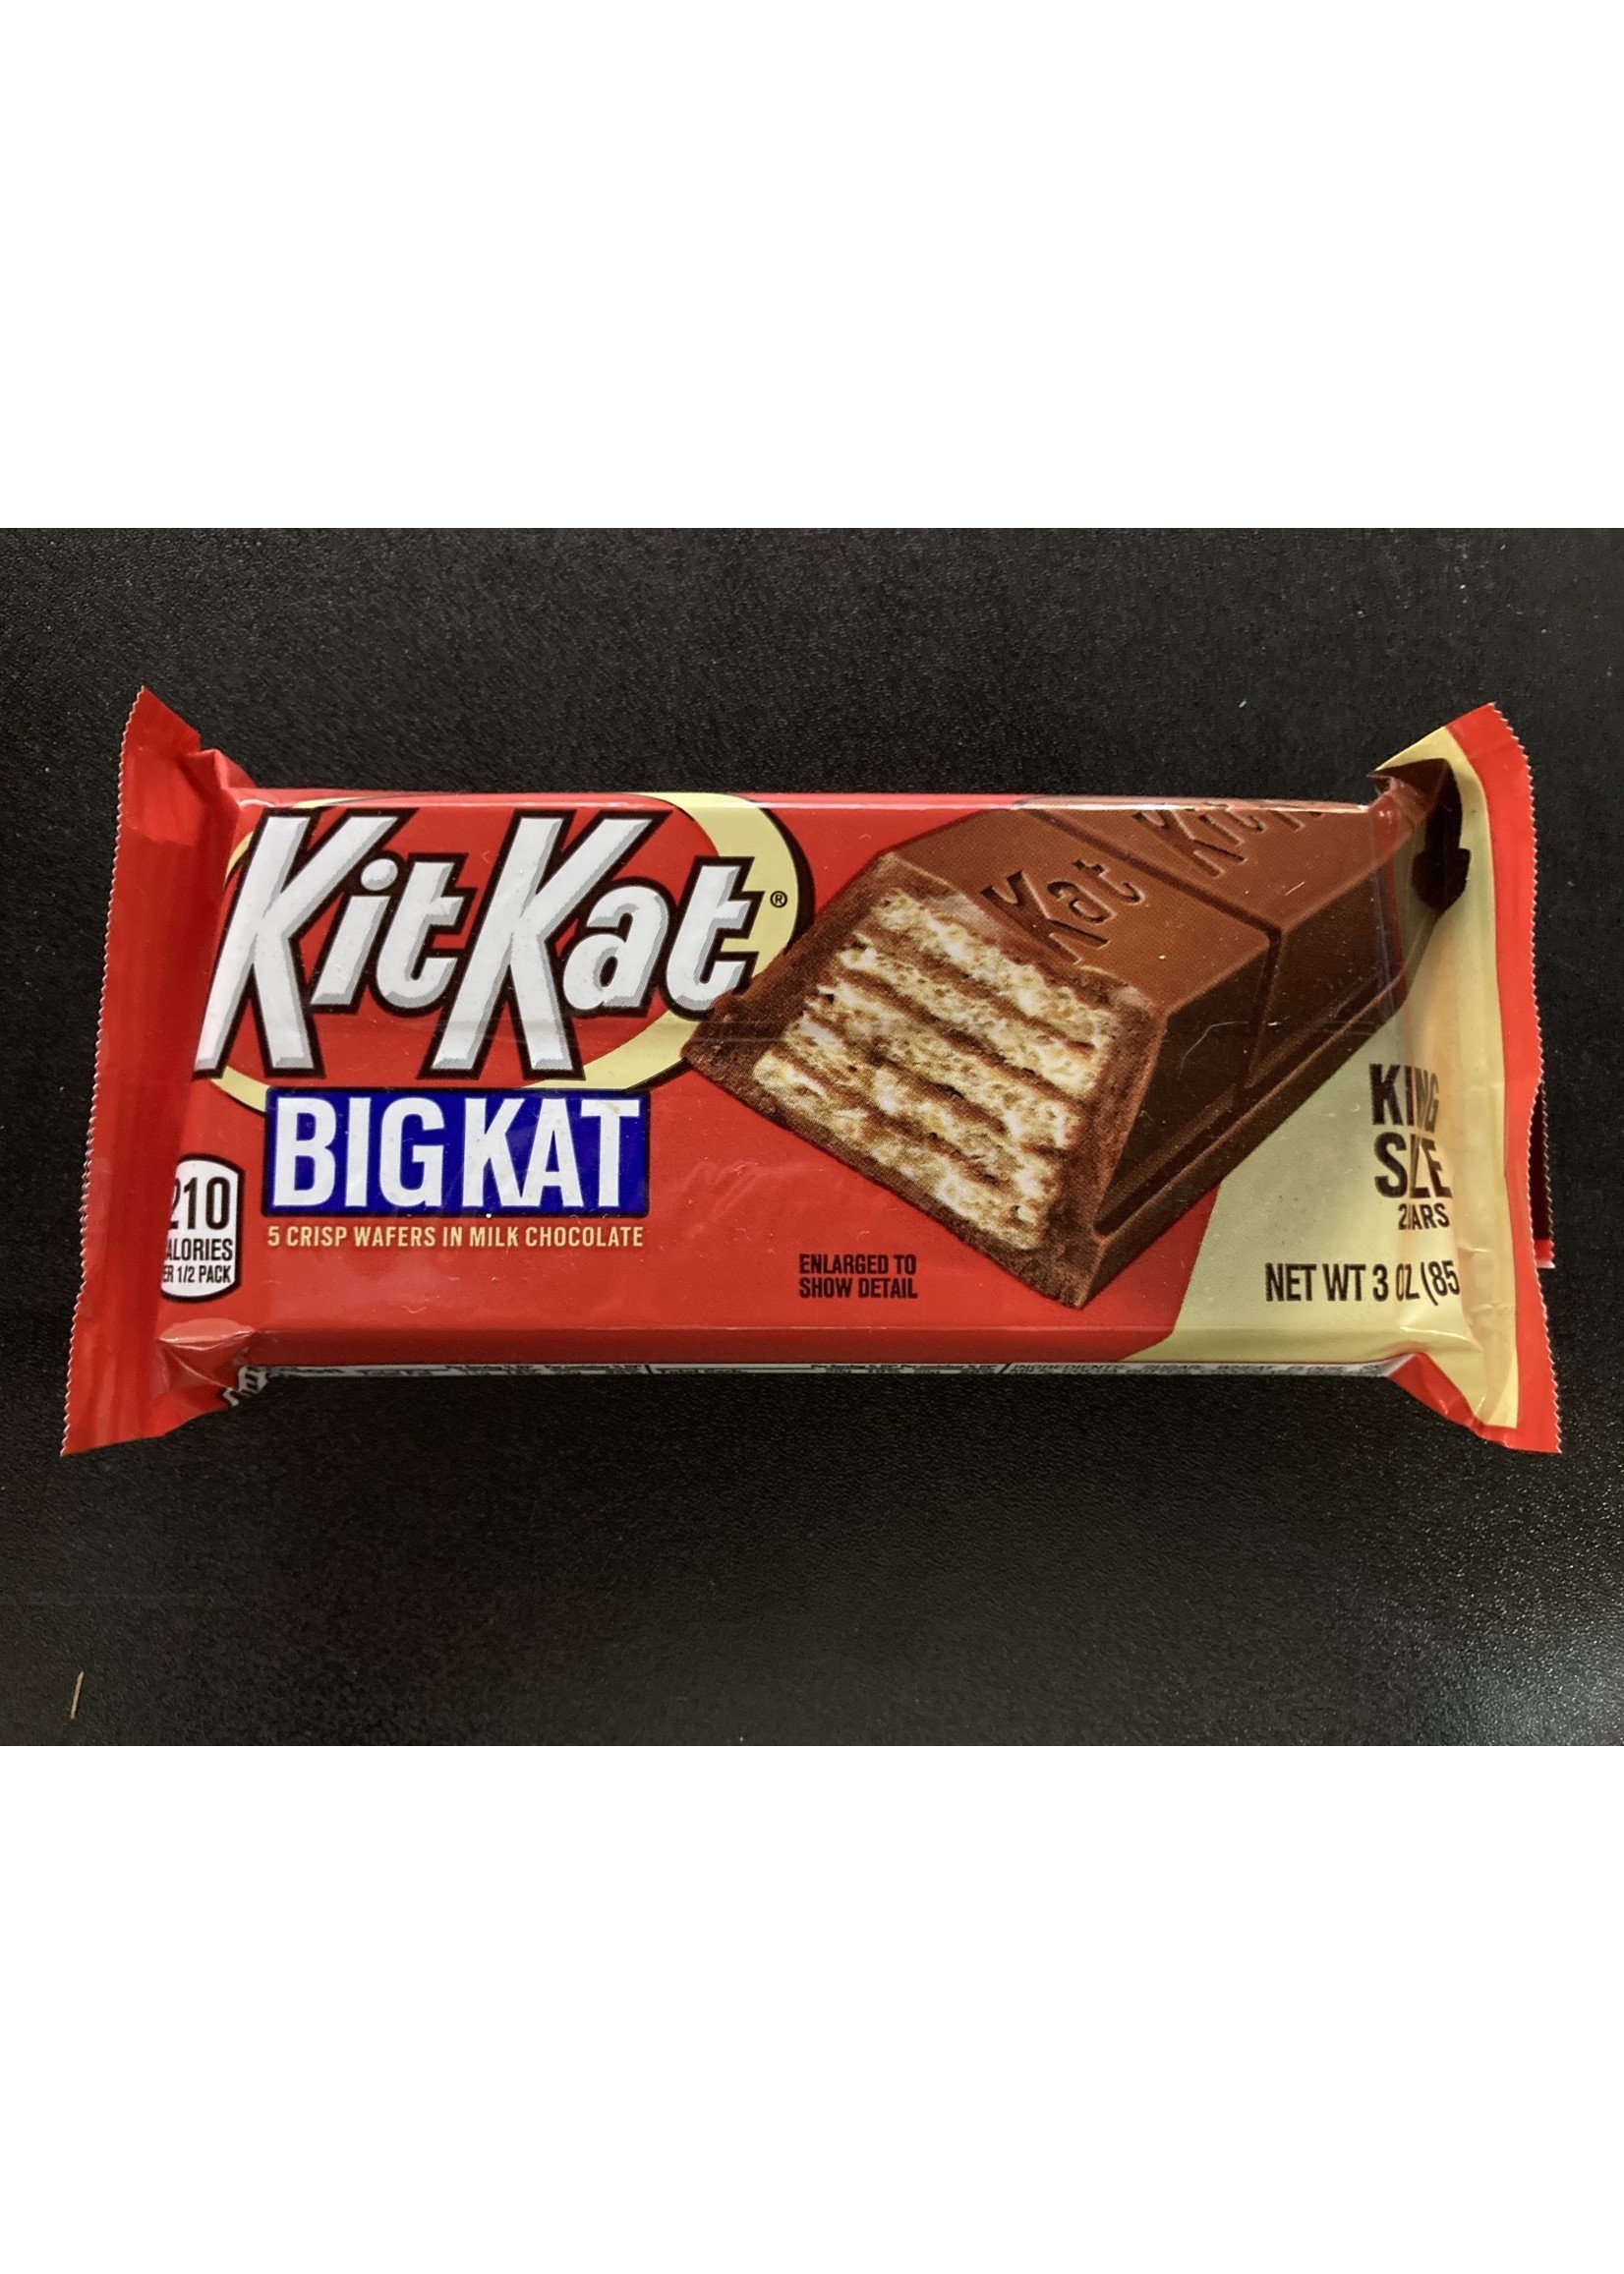 Mini Kit Kat King Size - 12ct –